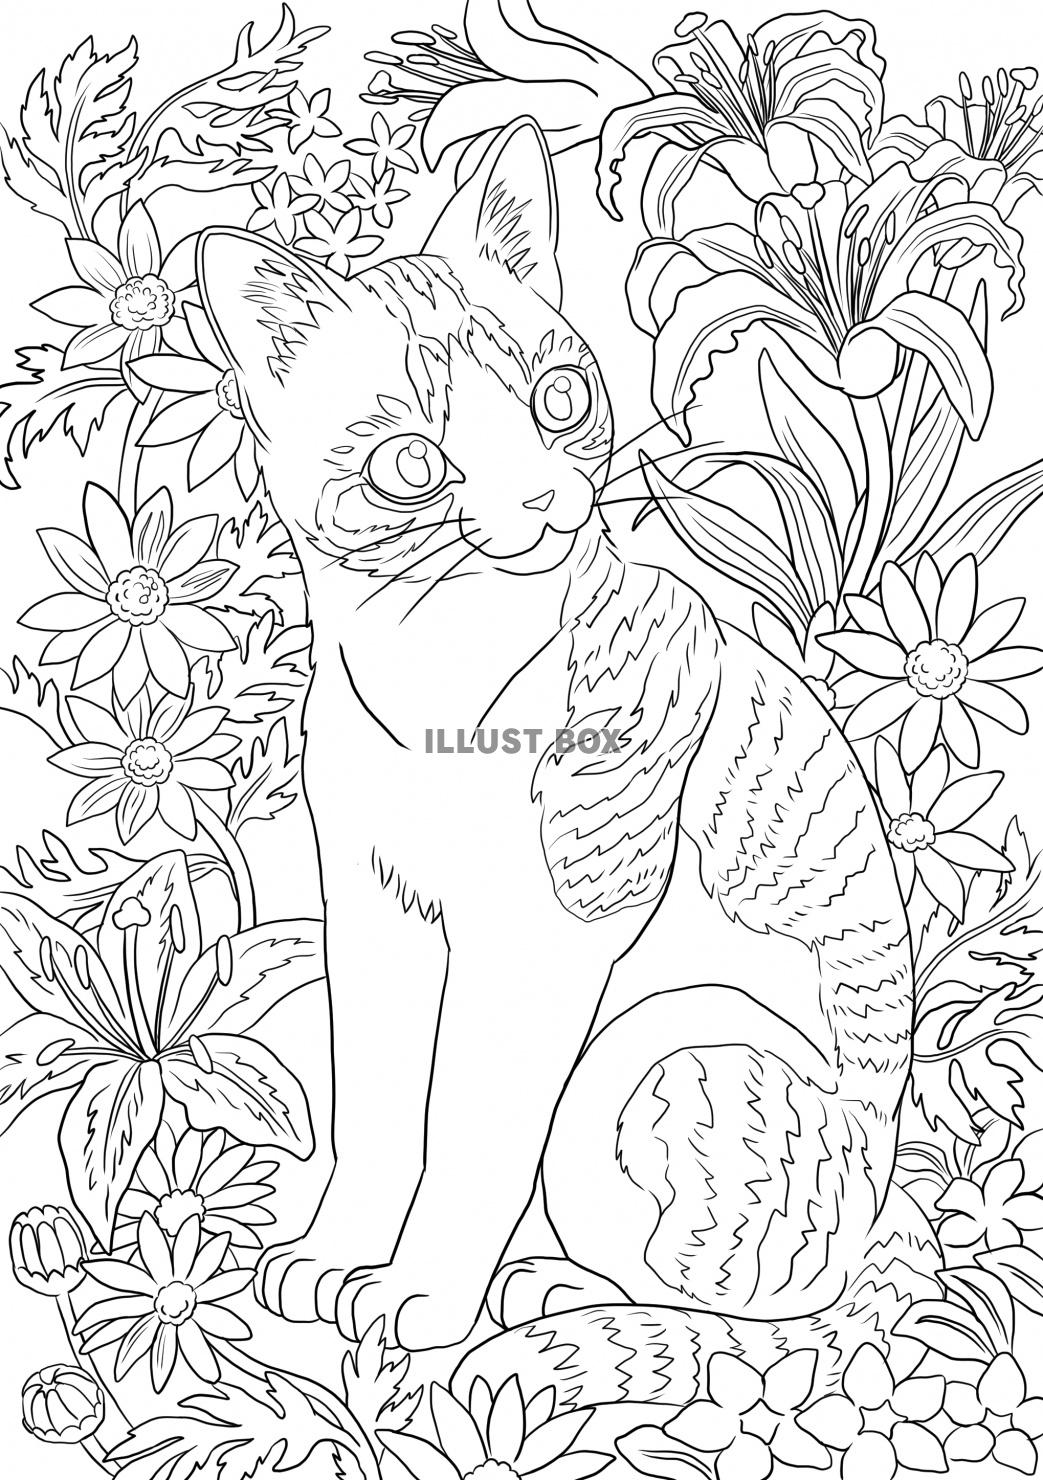 無料イラスト 花に囲まれてお座りしている猫の塗り絵